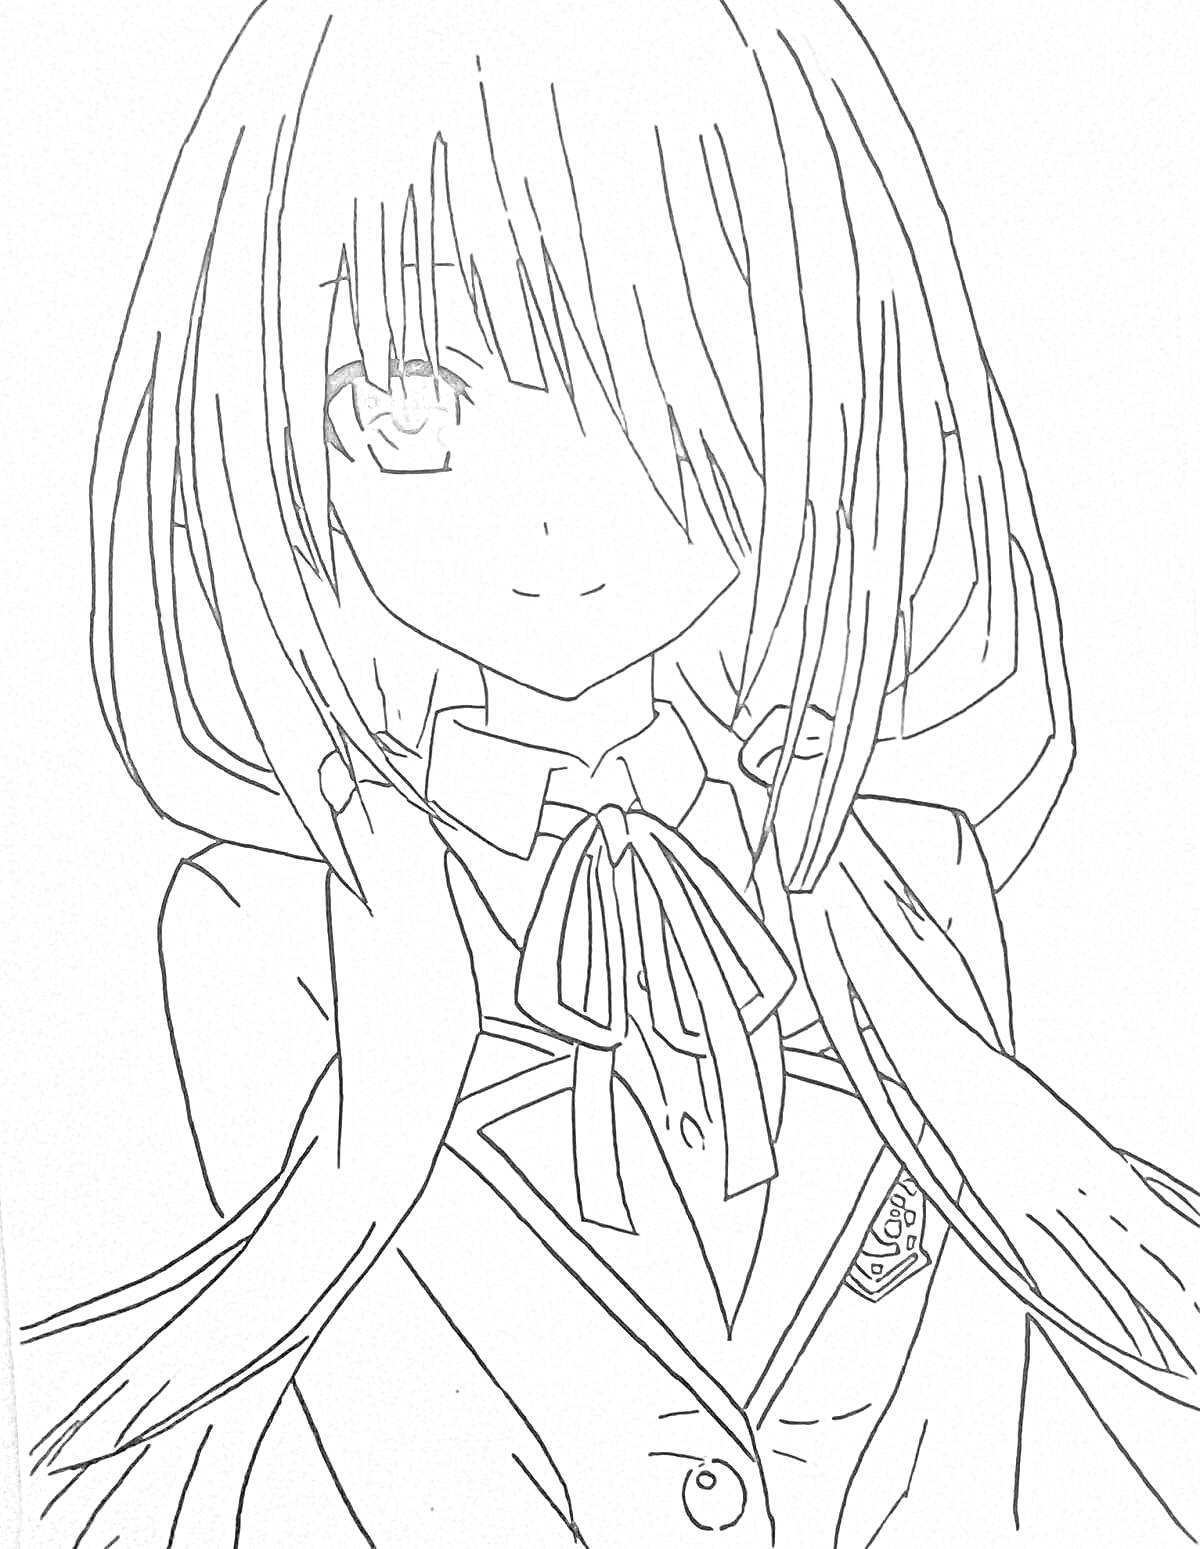 Раскраска Девушка с длинными волосами, в школьной форме с галстуком-бабочкой